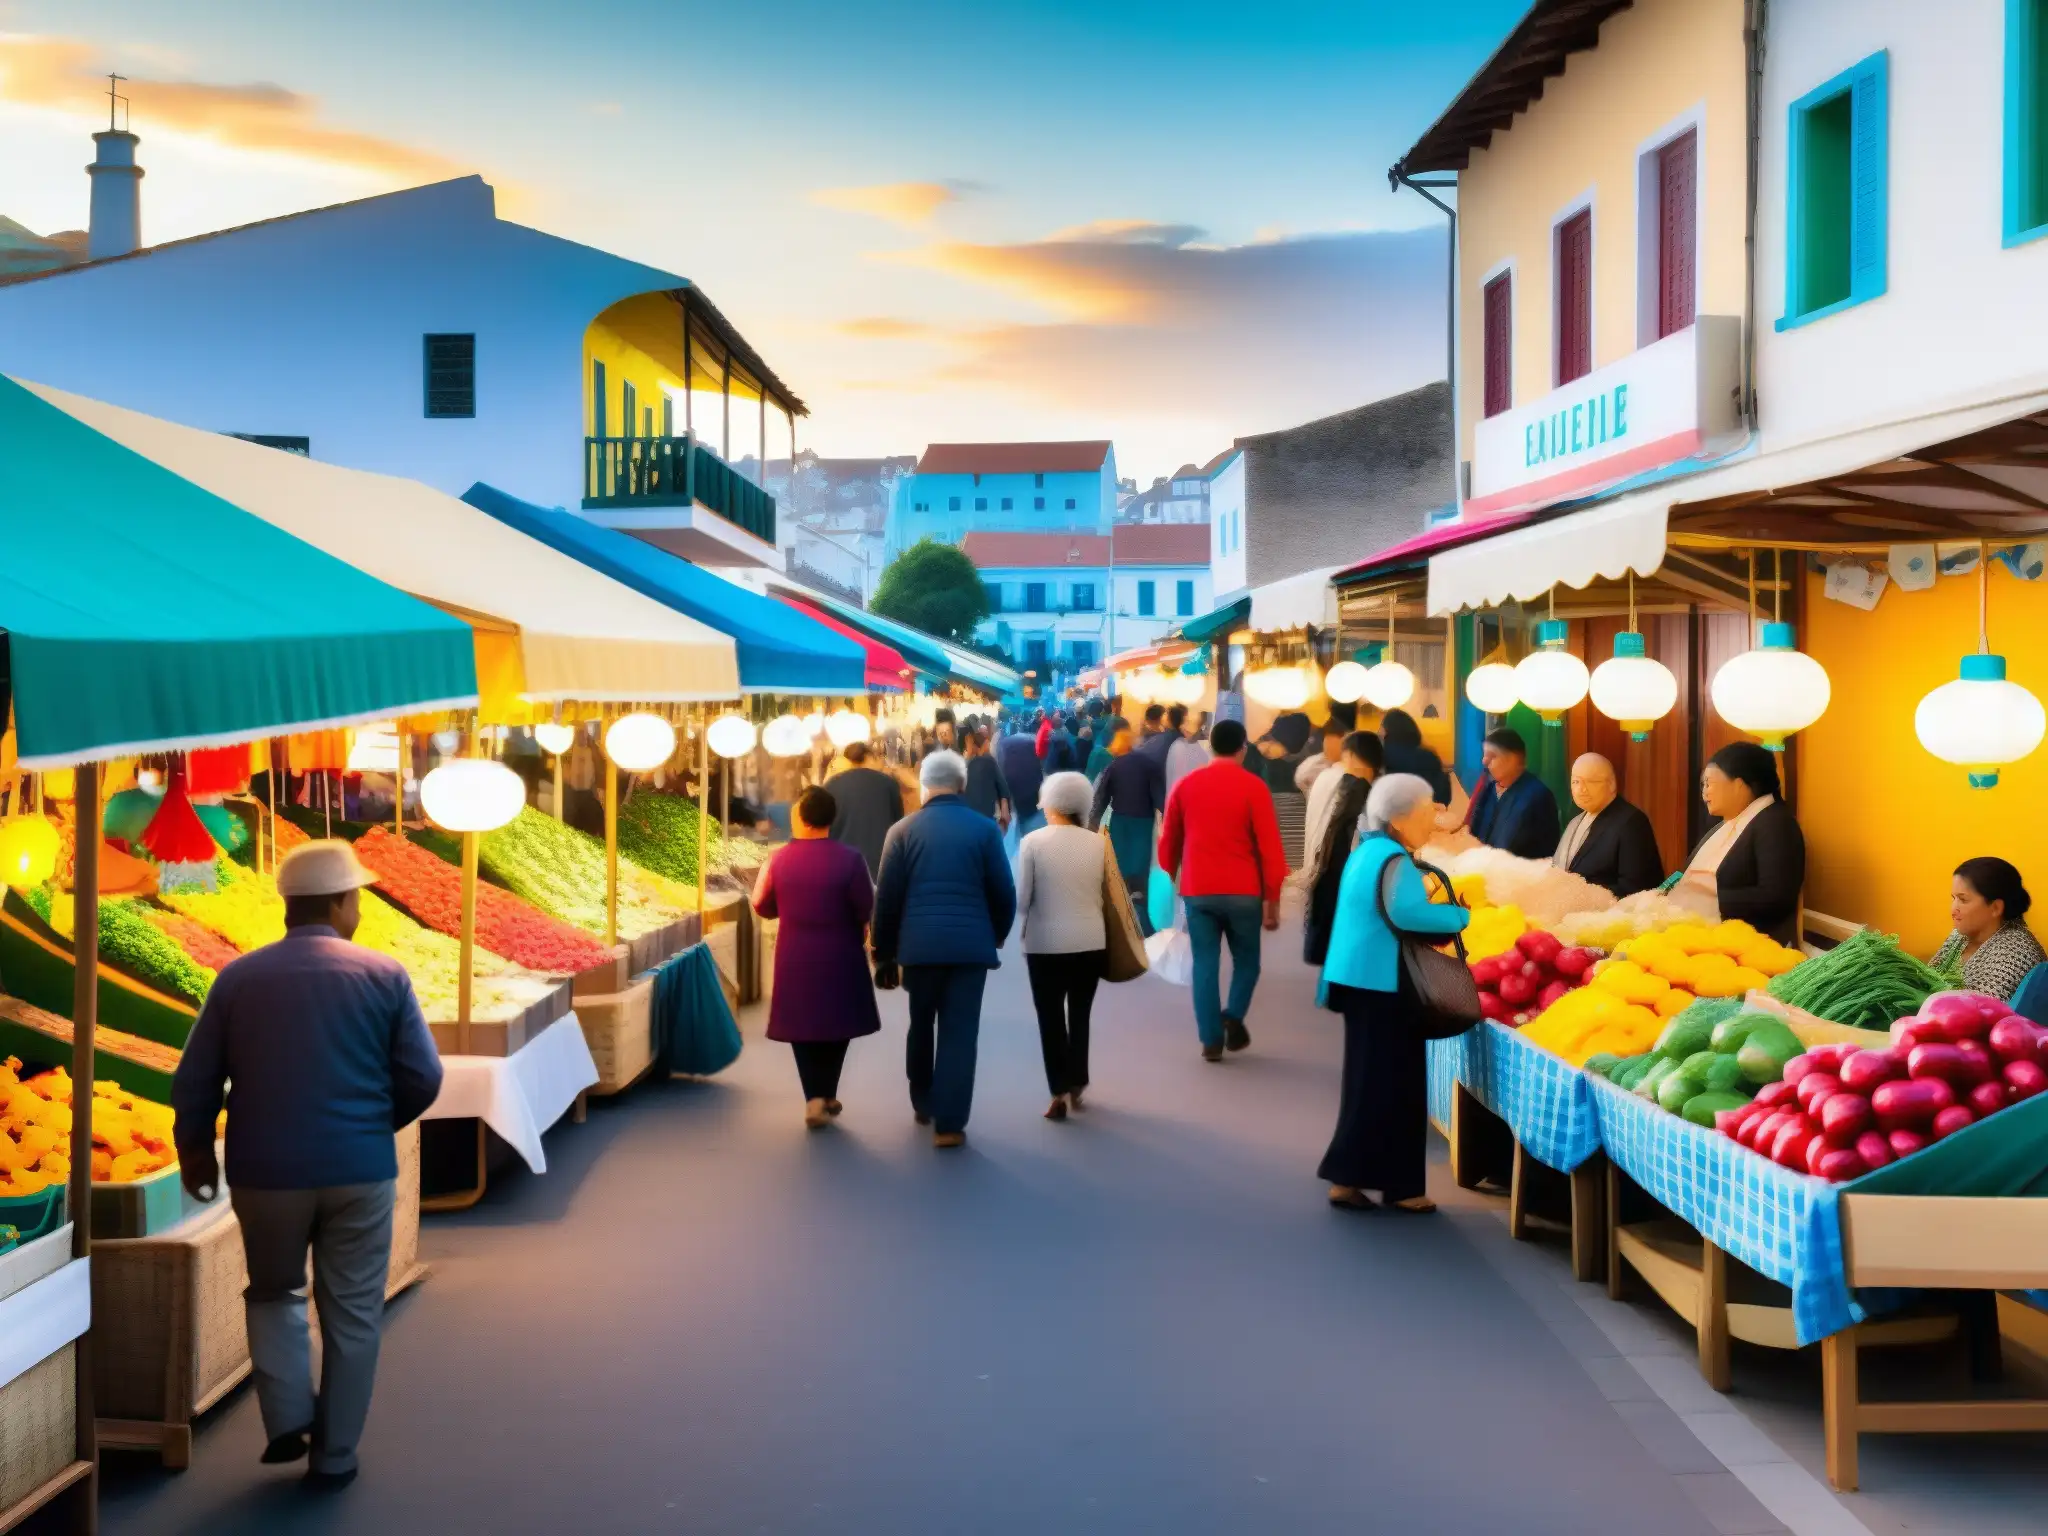 Un bullicioso mercado callejero en una ciudad costera con puestos coloridos que venden artesanías, comida local y productos hechos a mano